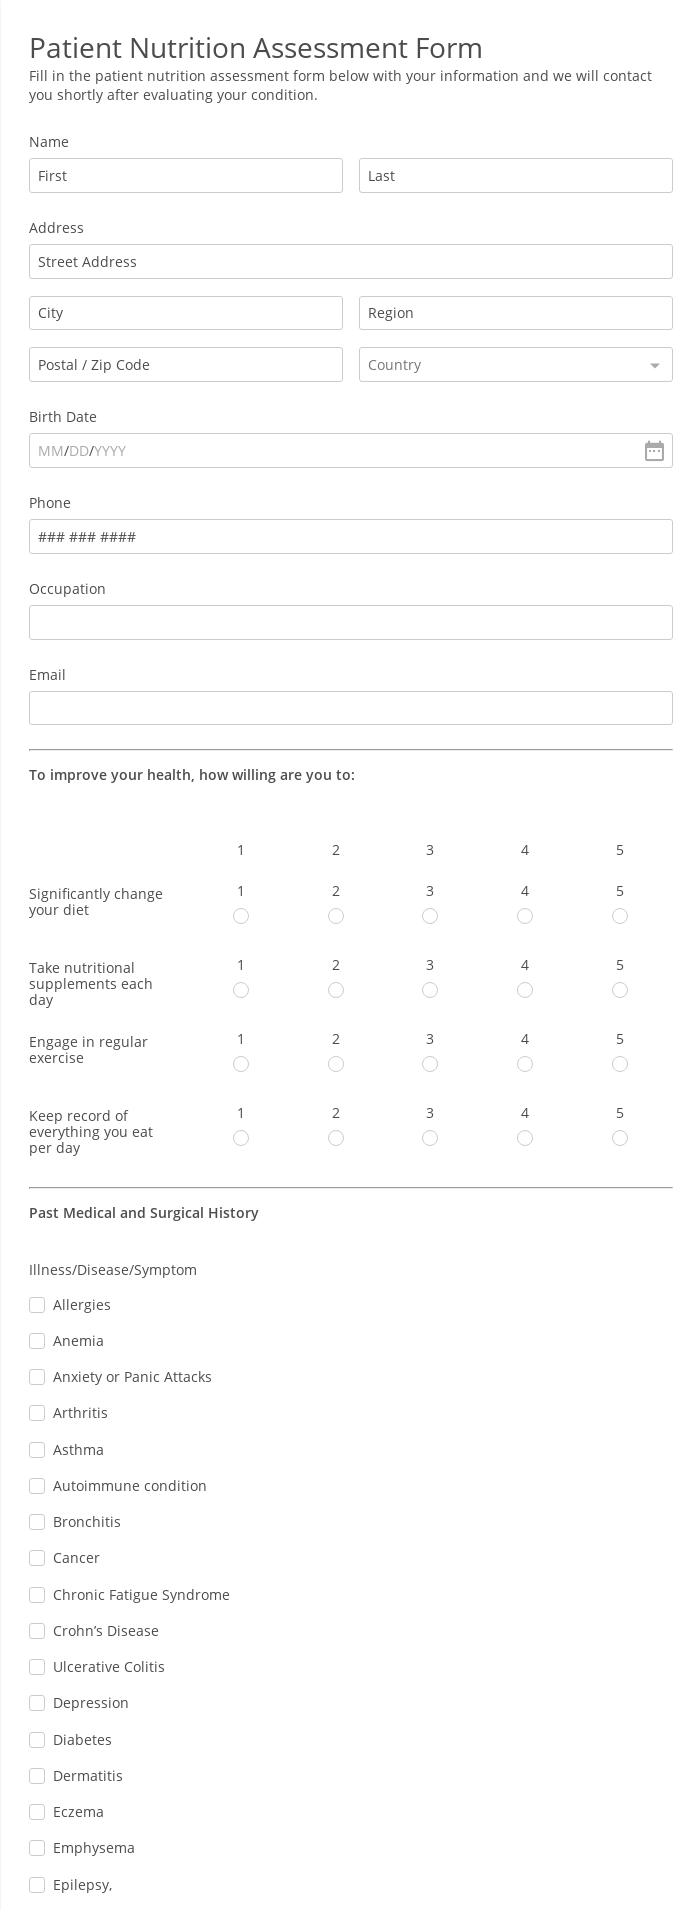 Patient Nutrition Assessment Form